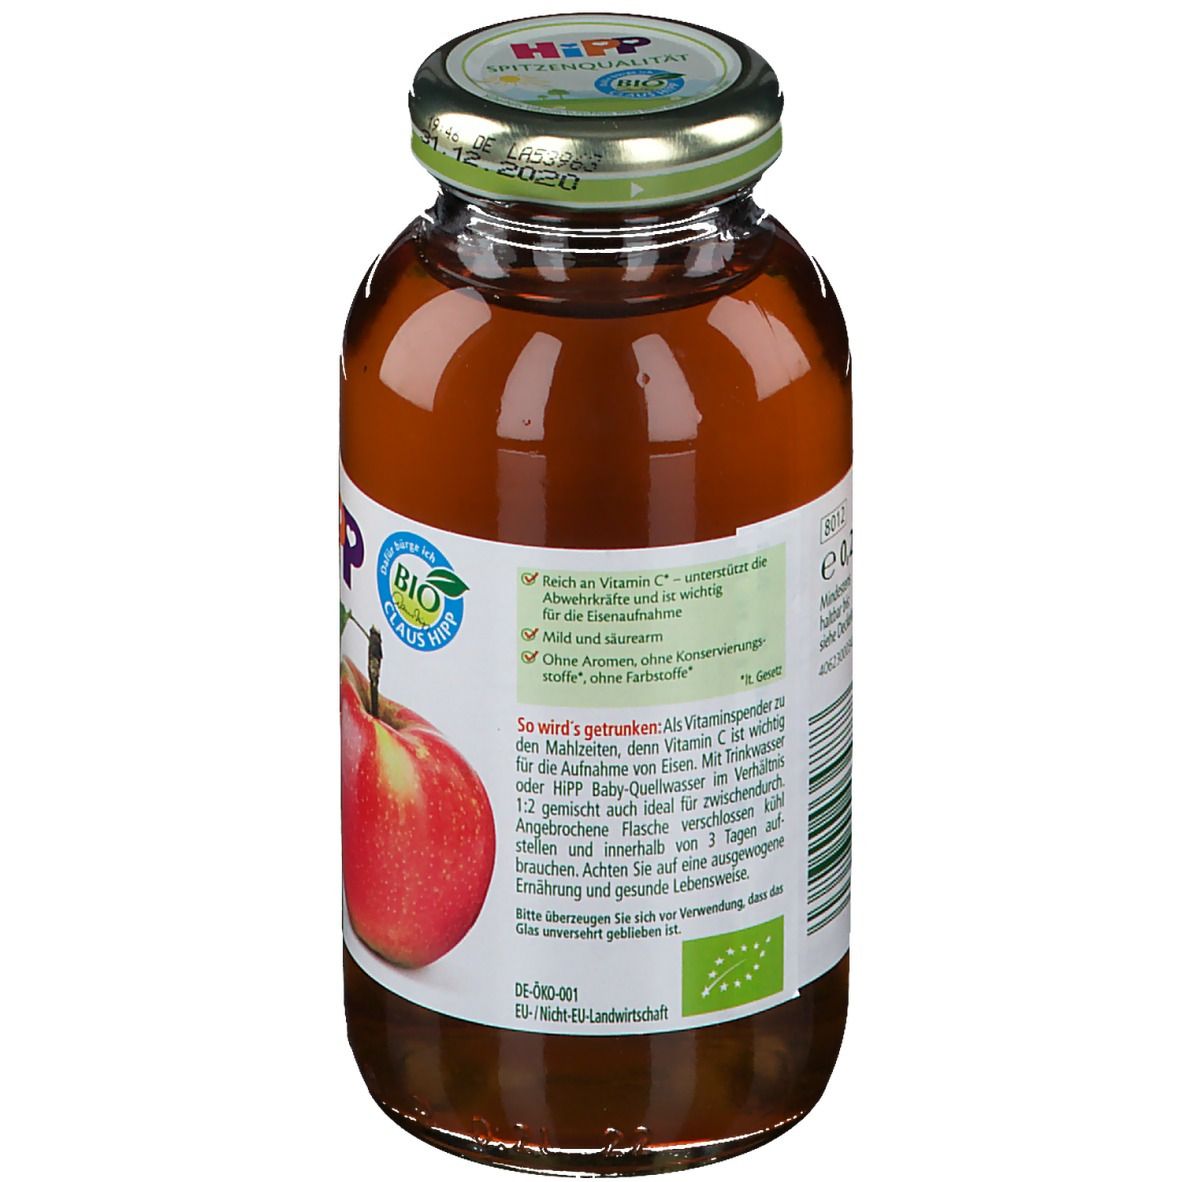 Hipp 100% Bio Saft Milder Apfel ab dem 5. Monat